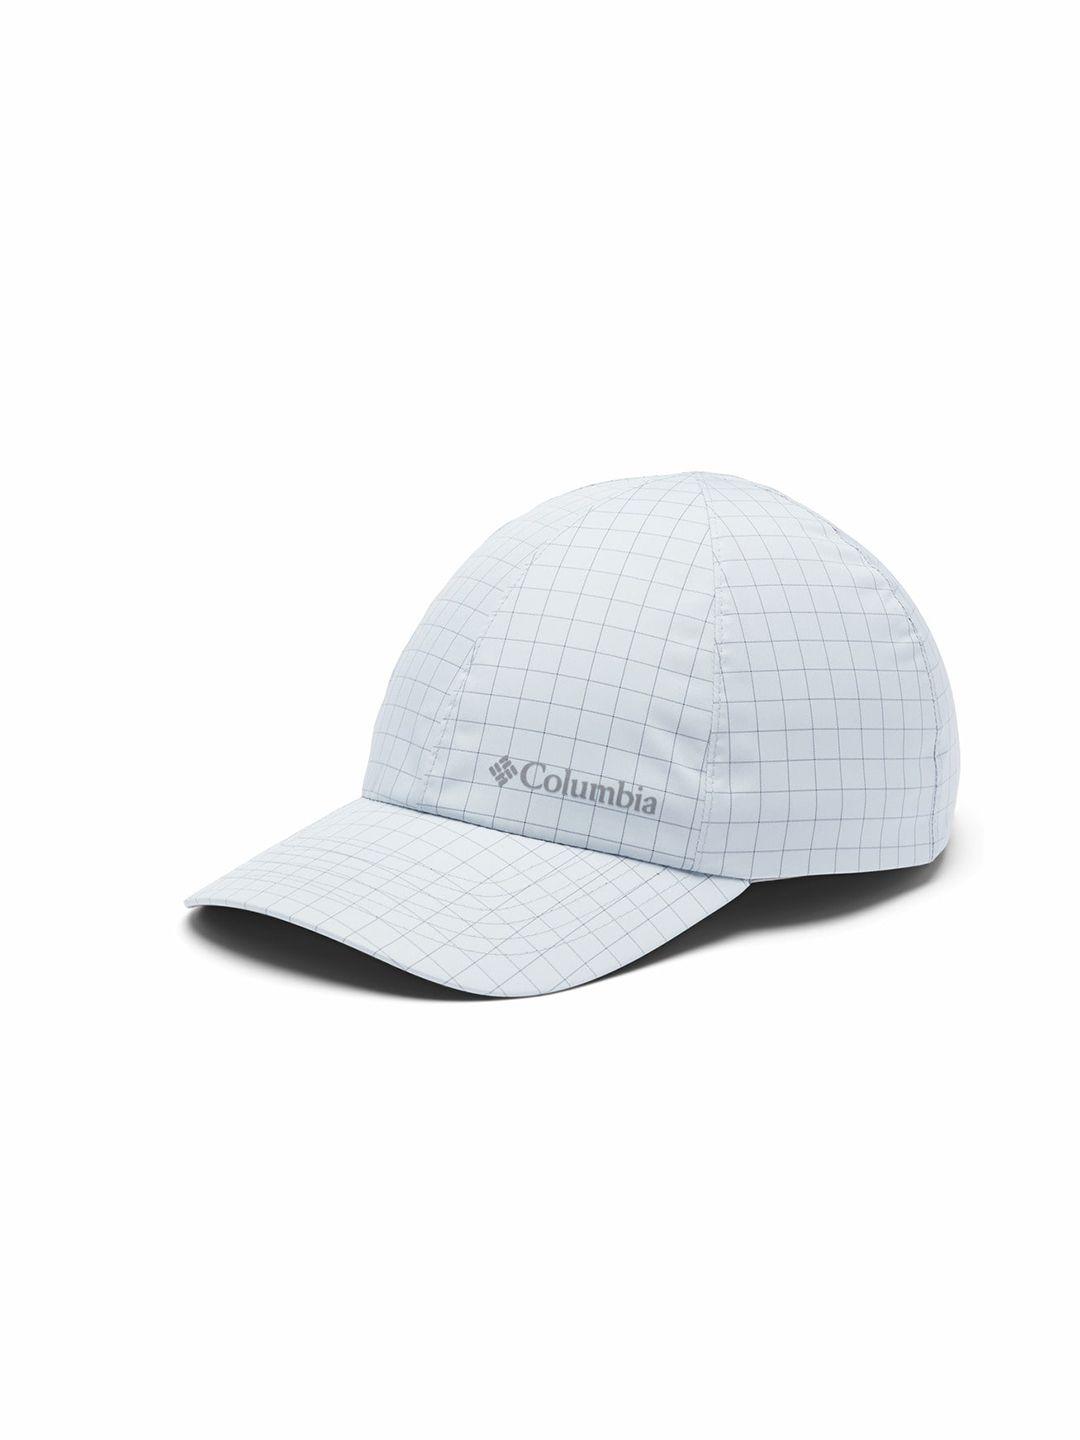 columbia grey printed baseball cap